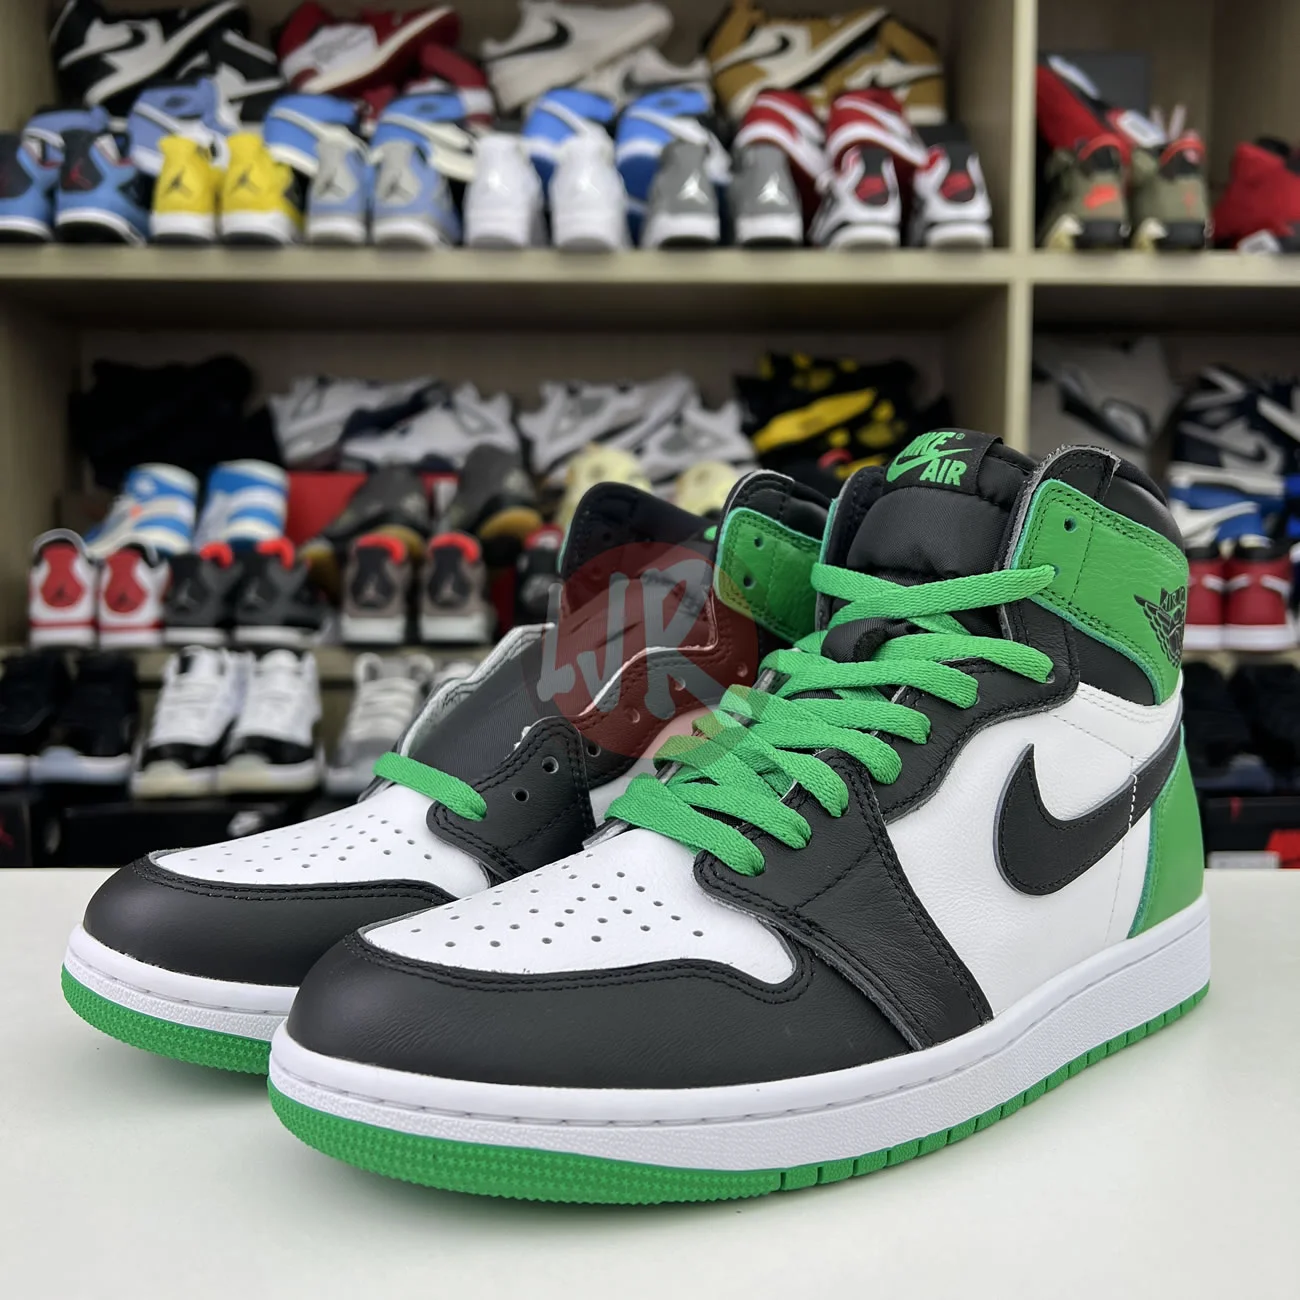 Air Jordan 1 Retro High Og Lucky Green Dz5485 031 Ljr Sneakers (45) - bc-ljr.net